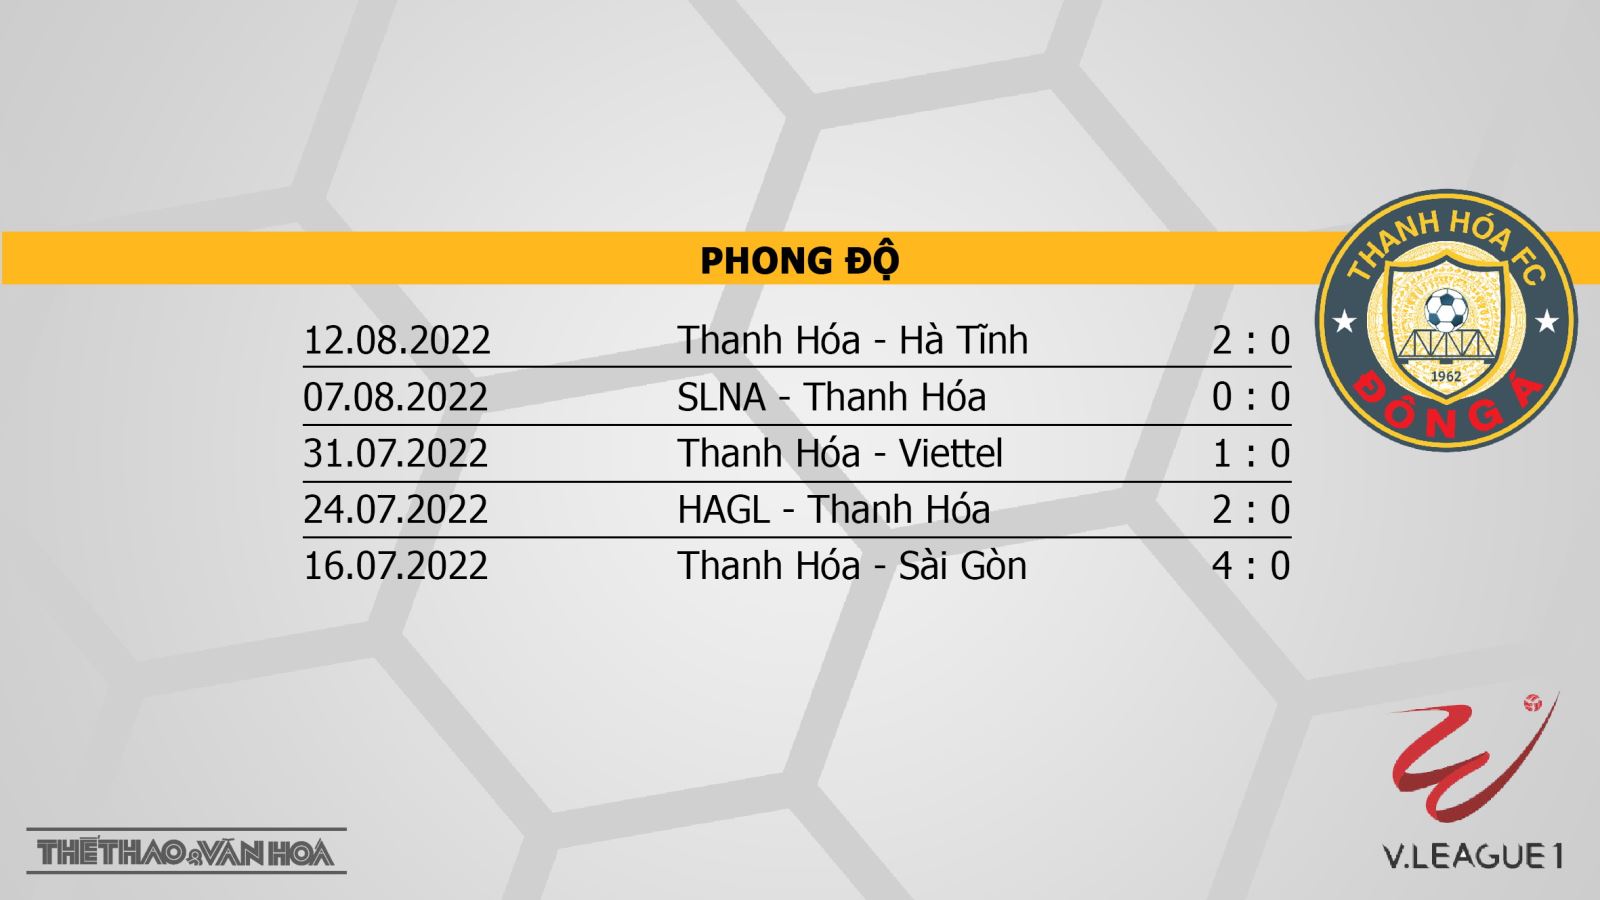 Bình Định vs Thanh Hóa, nhận định kết quả, nhận định bóng đá Bình Định vs Thanh Hóa, nhận định bóng đá, Bình Định, Thanh Hóa, keo nha cai, dự đoán bóng đá, V-League 2022, nhận định bóng đá